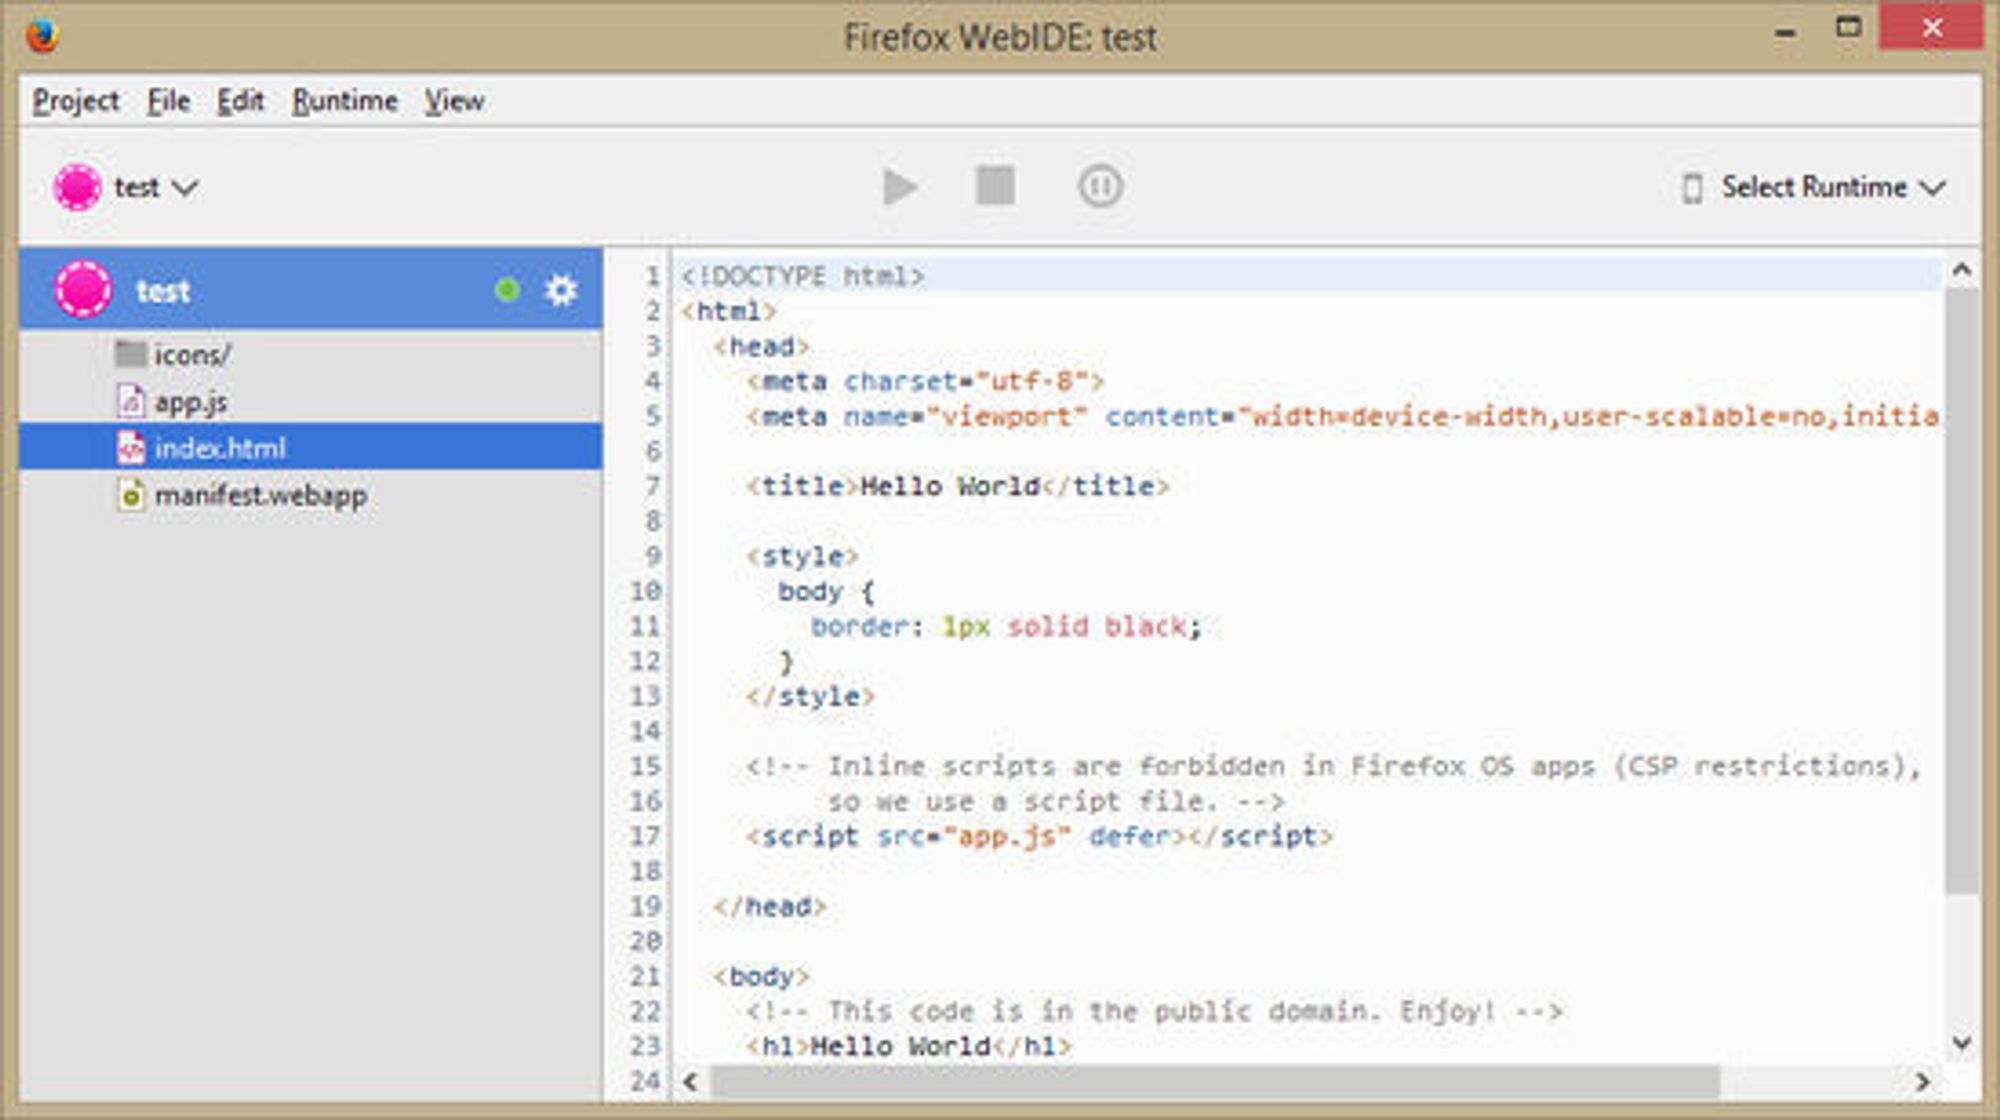 WebIDE er et nytt verktøy i Firefox for utvikling av webbaserte applikasjoner.